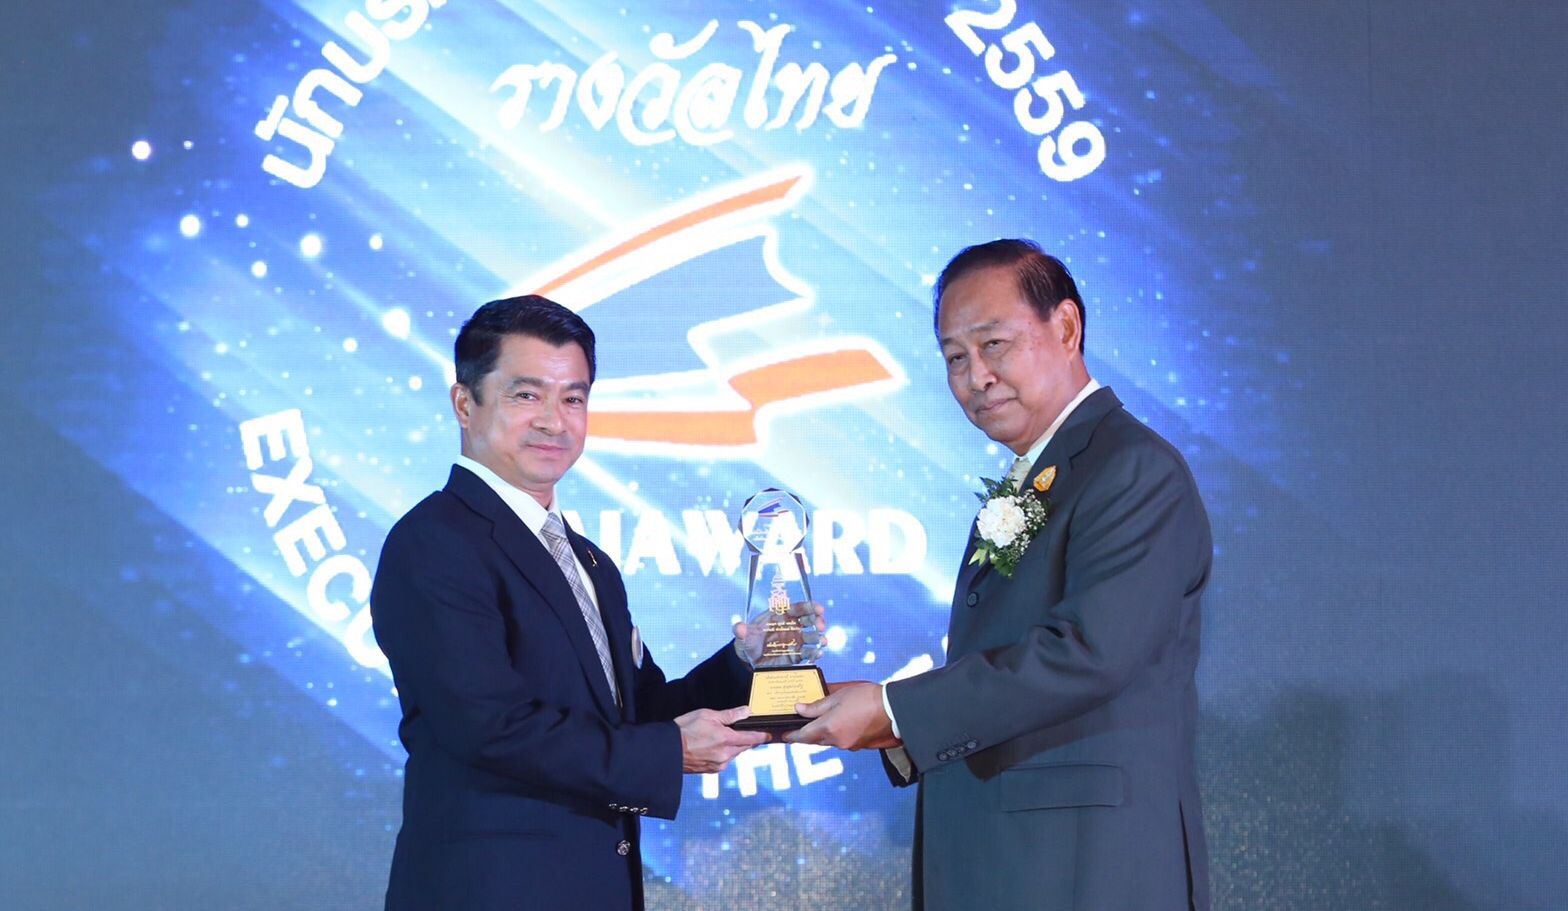 ‘เศรษฐพงค์’ รับรางวัล ‘Executive of the Year 2016’ พร้อมดันไทยสู่ผู้นำด้านดิจิทัลใน ASEAN